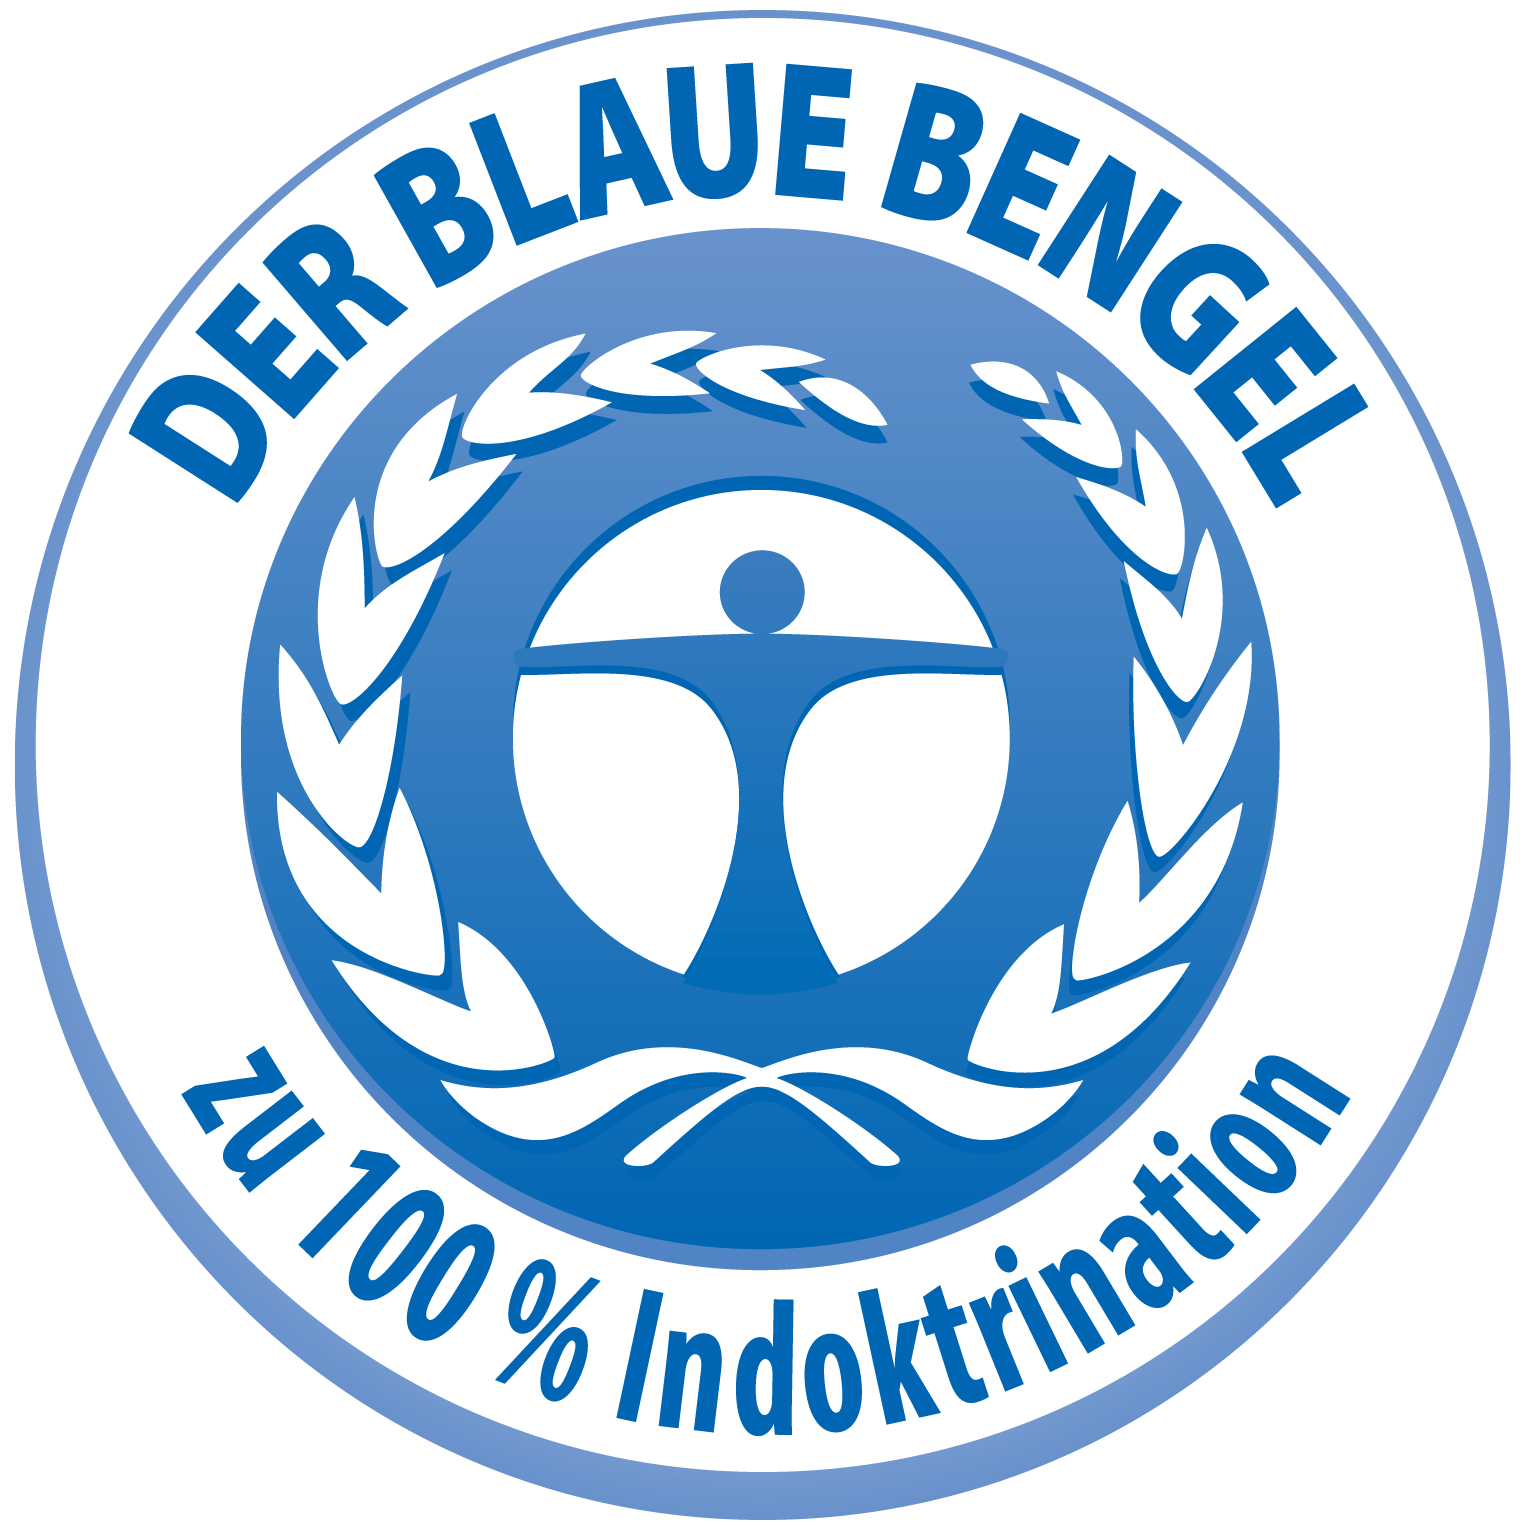 Blauer_BEngel_logo_zu_100_Prozent_Indoktrination